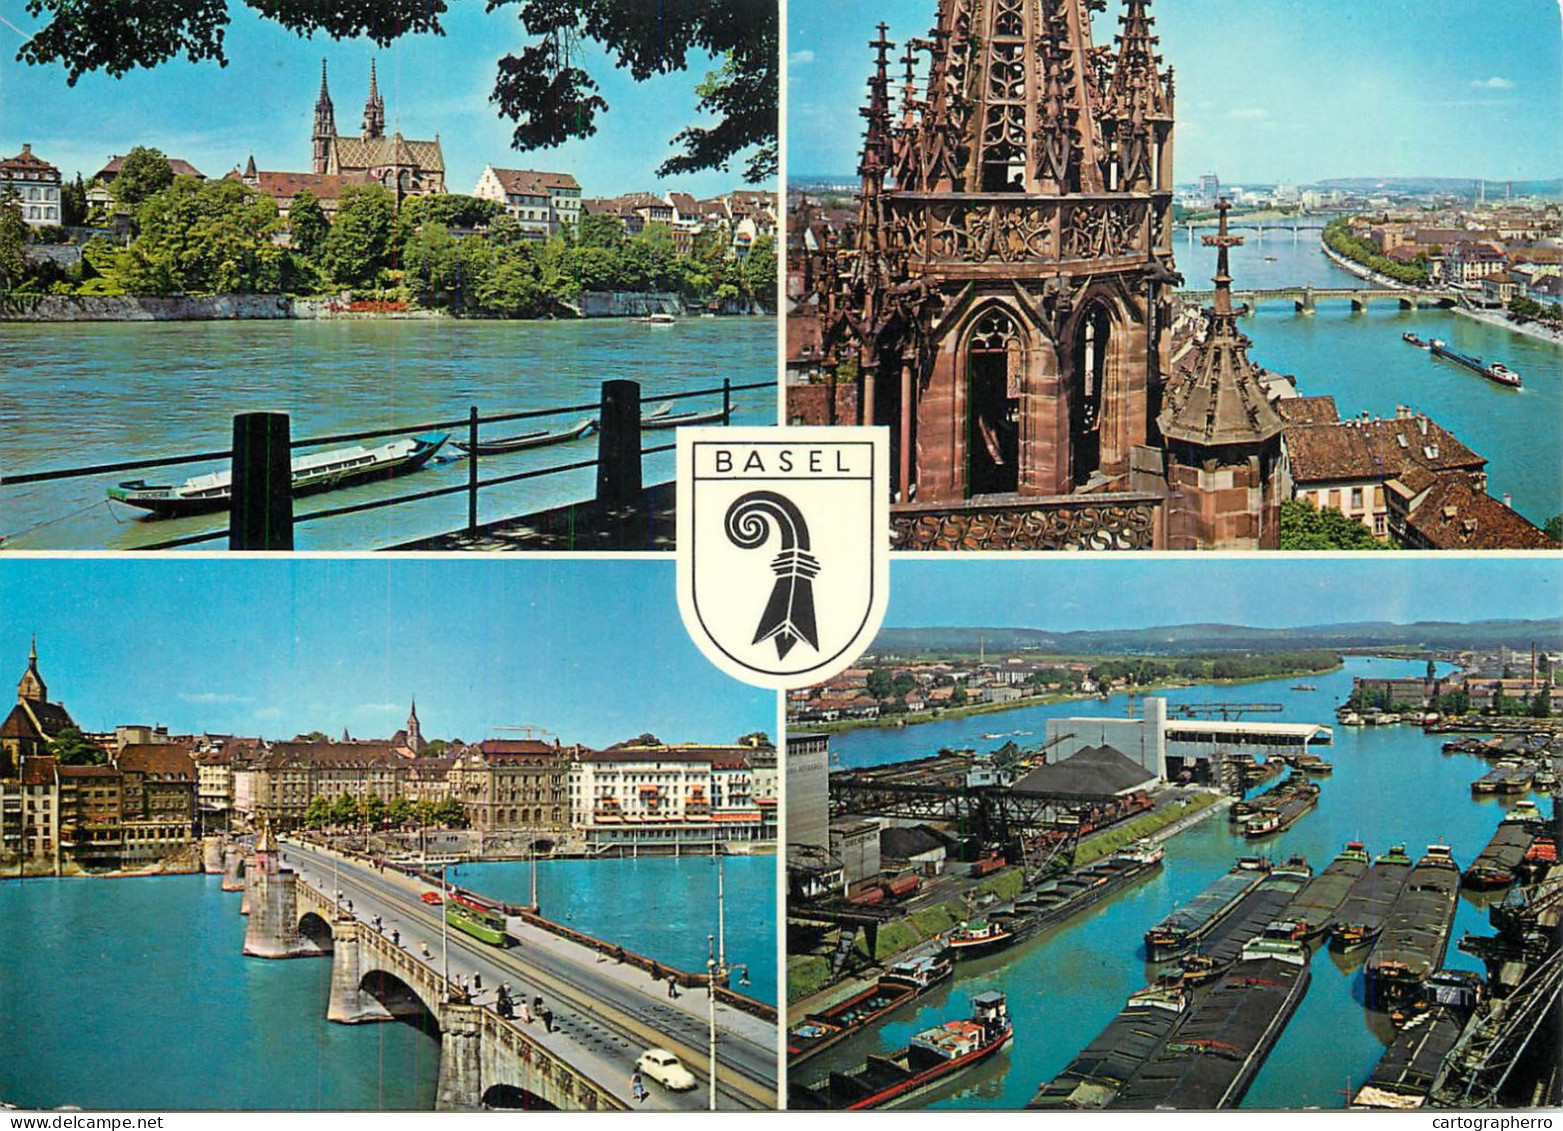 Navigation Sailing Vessels & Boats Themed Postcard Basel Transport Barges - Sailing Vessels